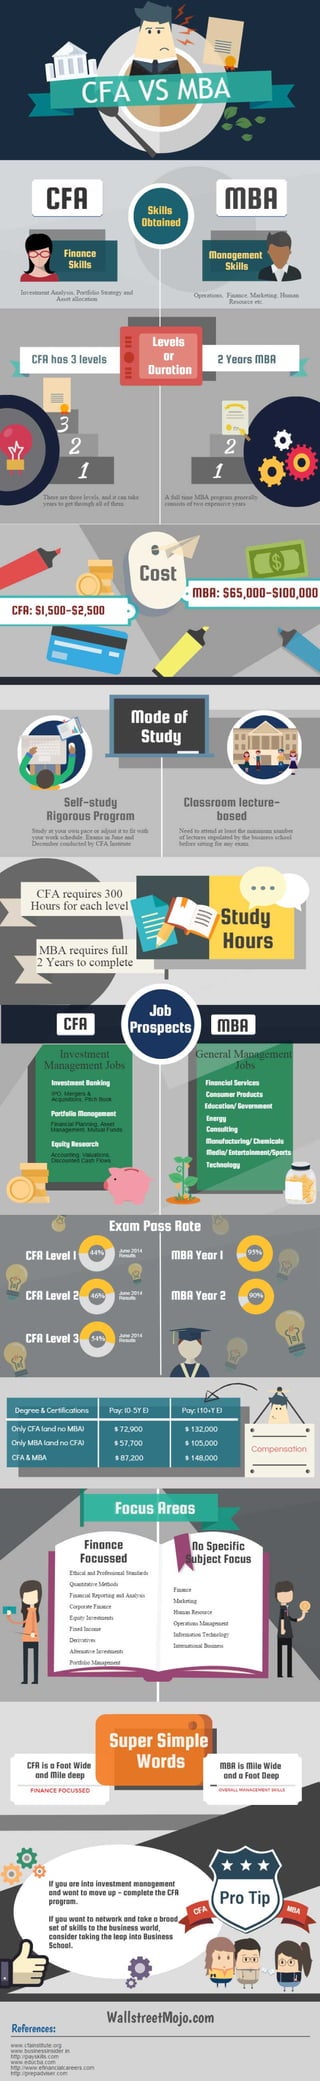 CFA VS MBA